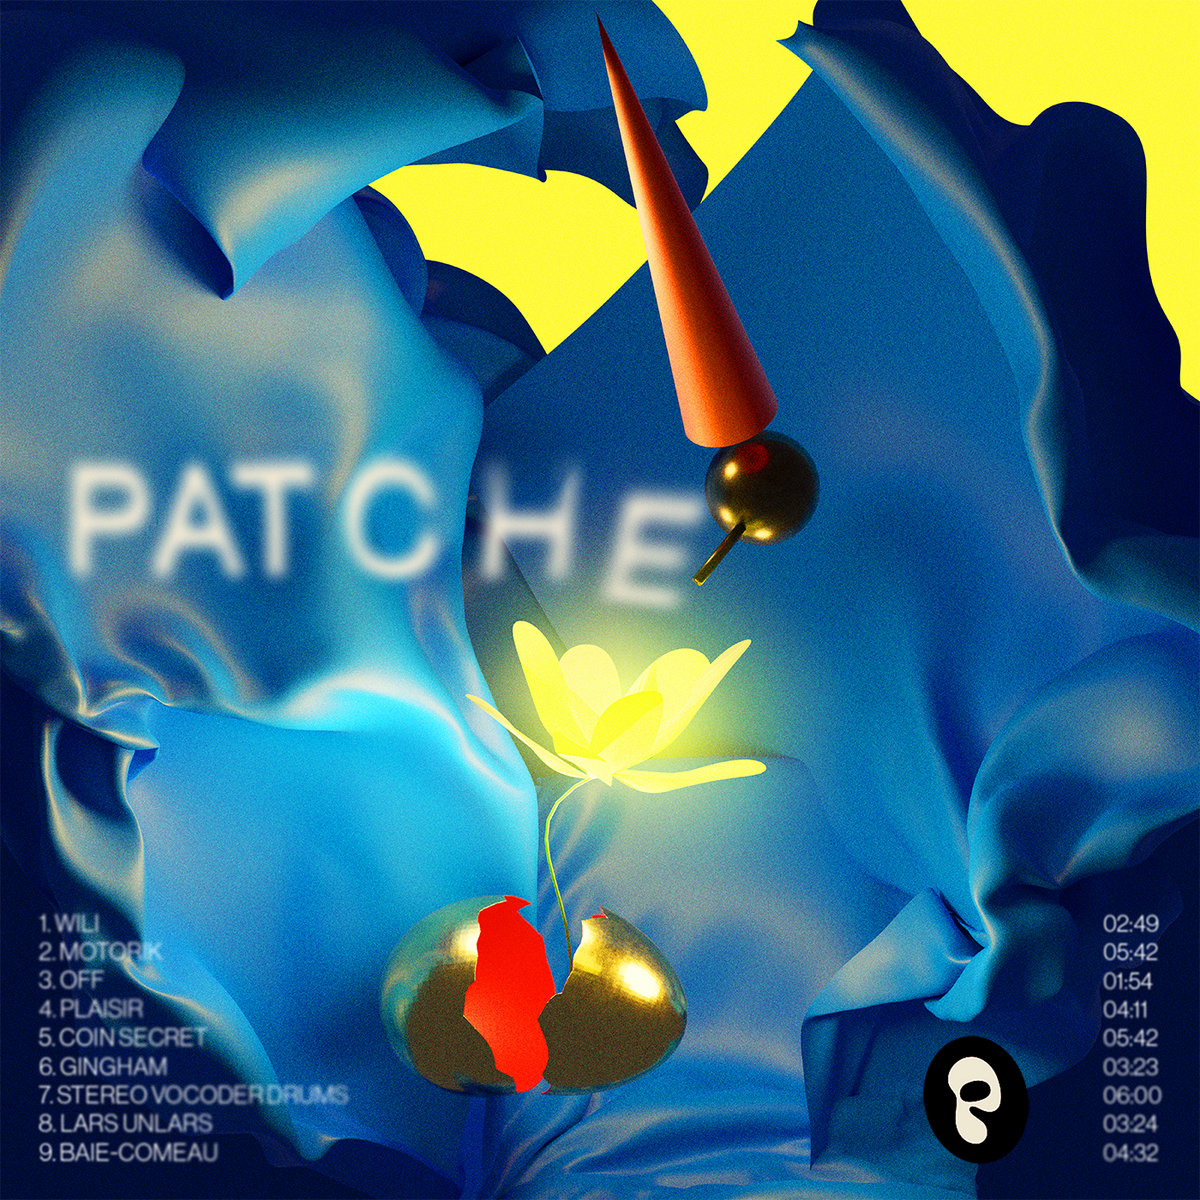 Patche, Patche: REVIEW